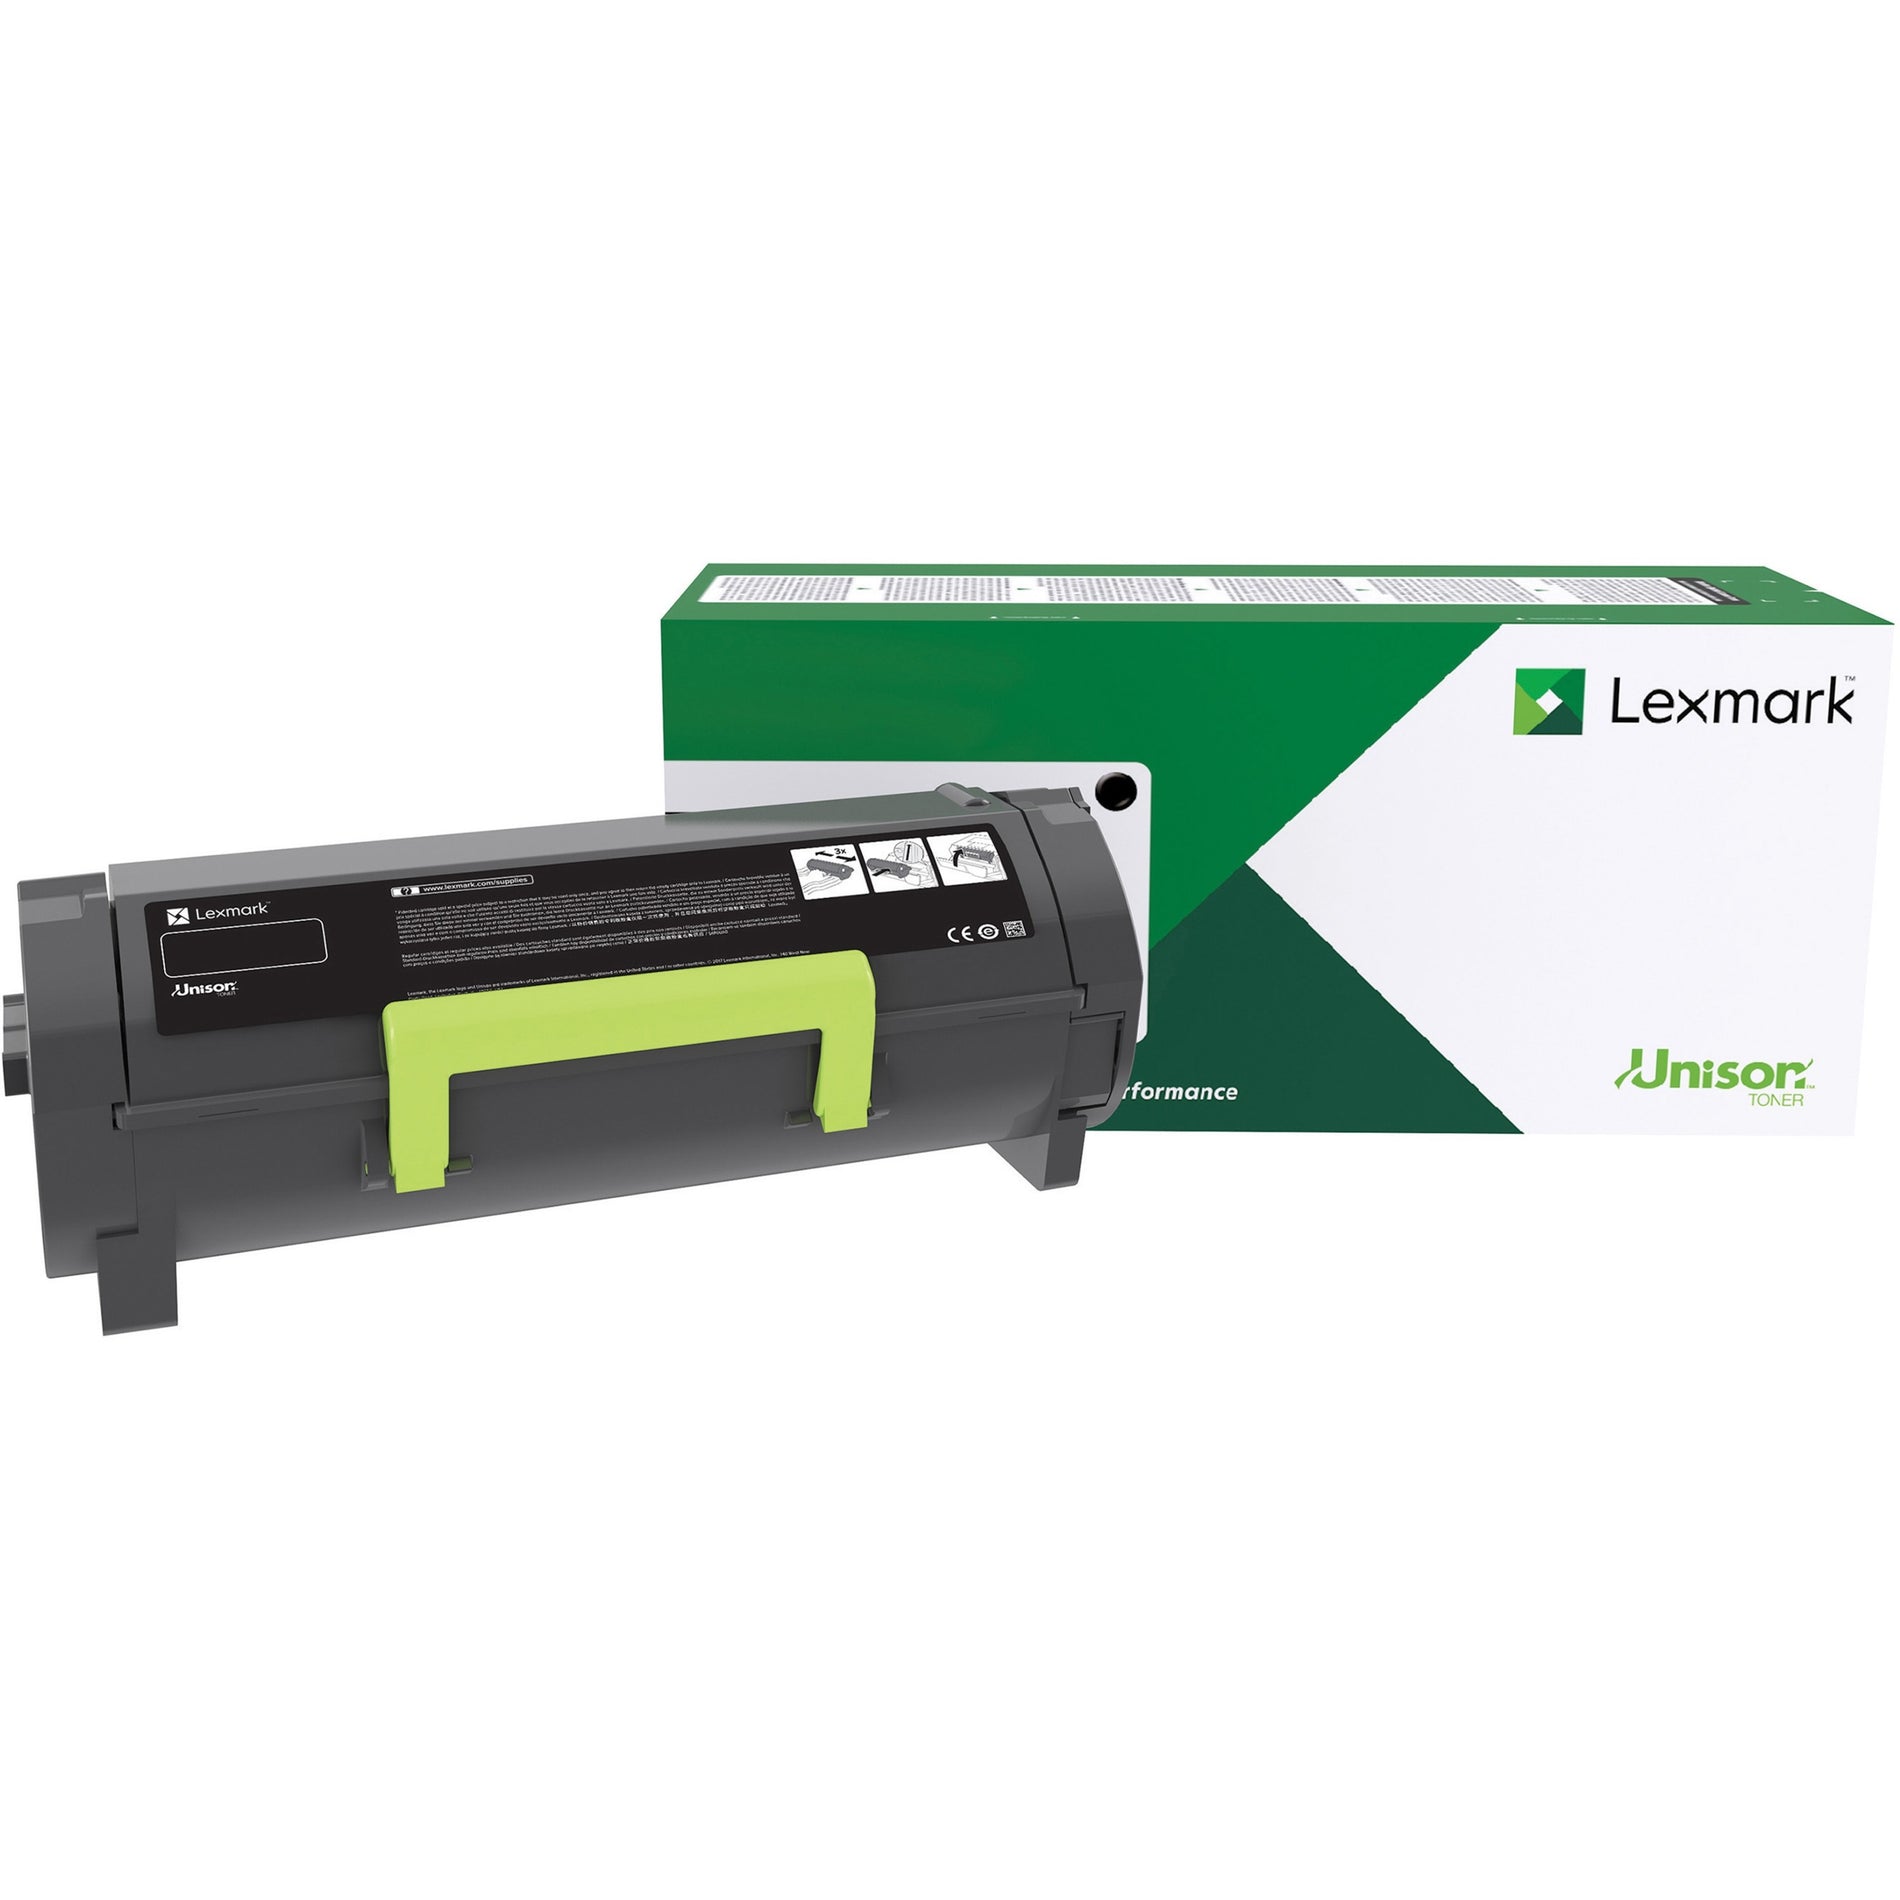 Lexmark 50F1U00 Unison Toner Cartridge, 20,000 Page Yield, Black